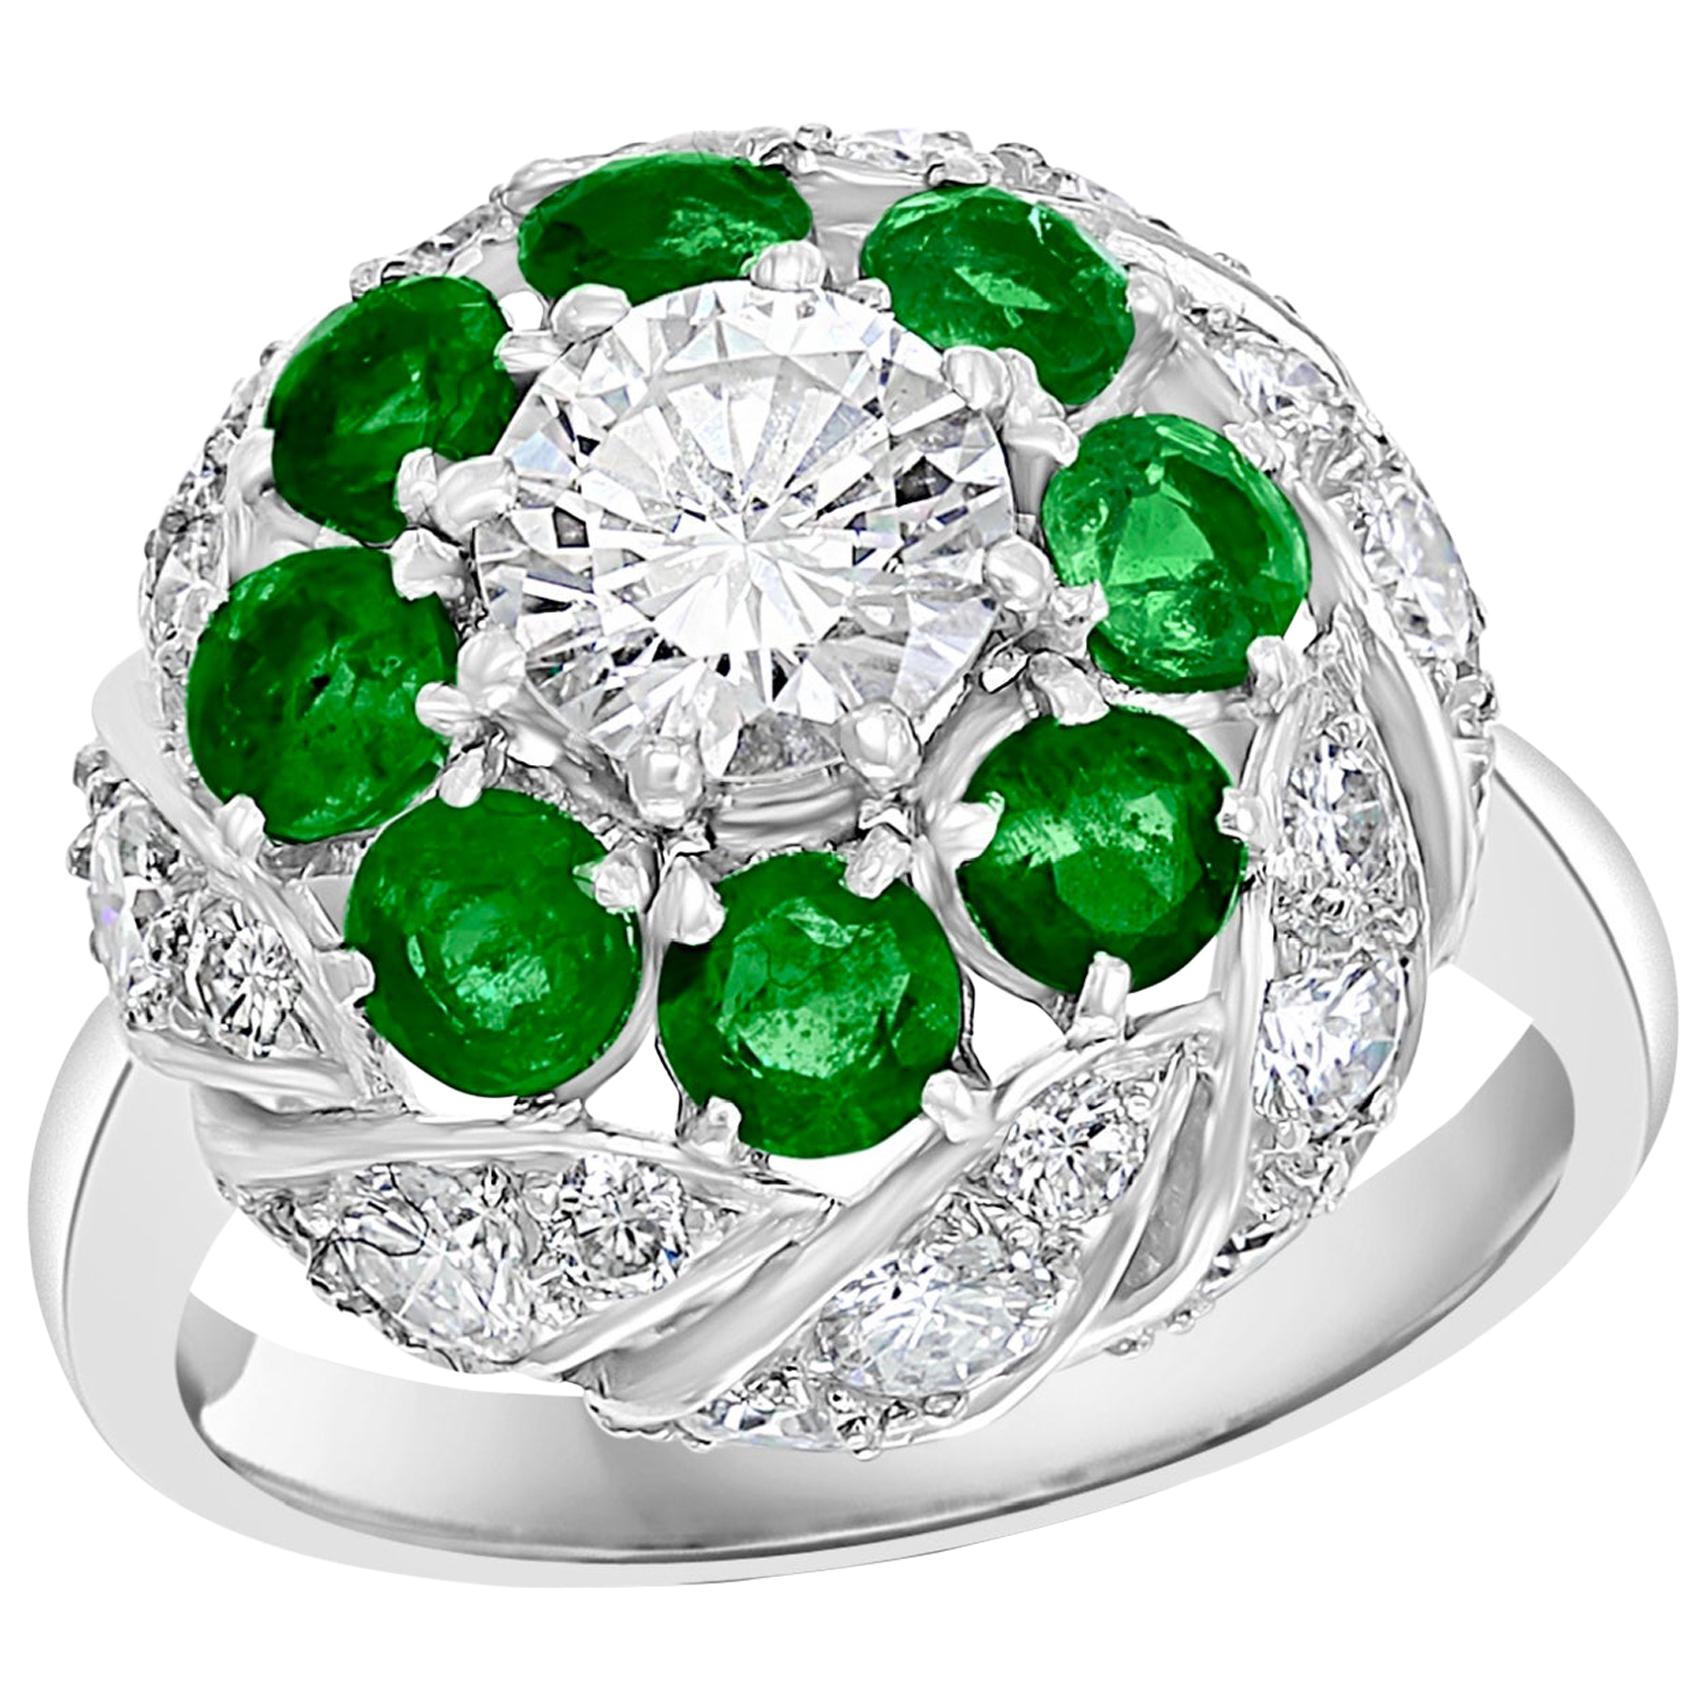 Antique Victorian Emerald and Solitaire Diamond Ring in Platinum Estate